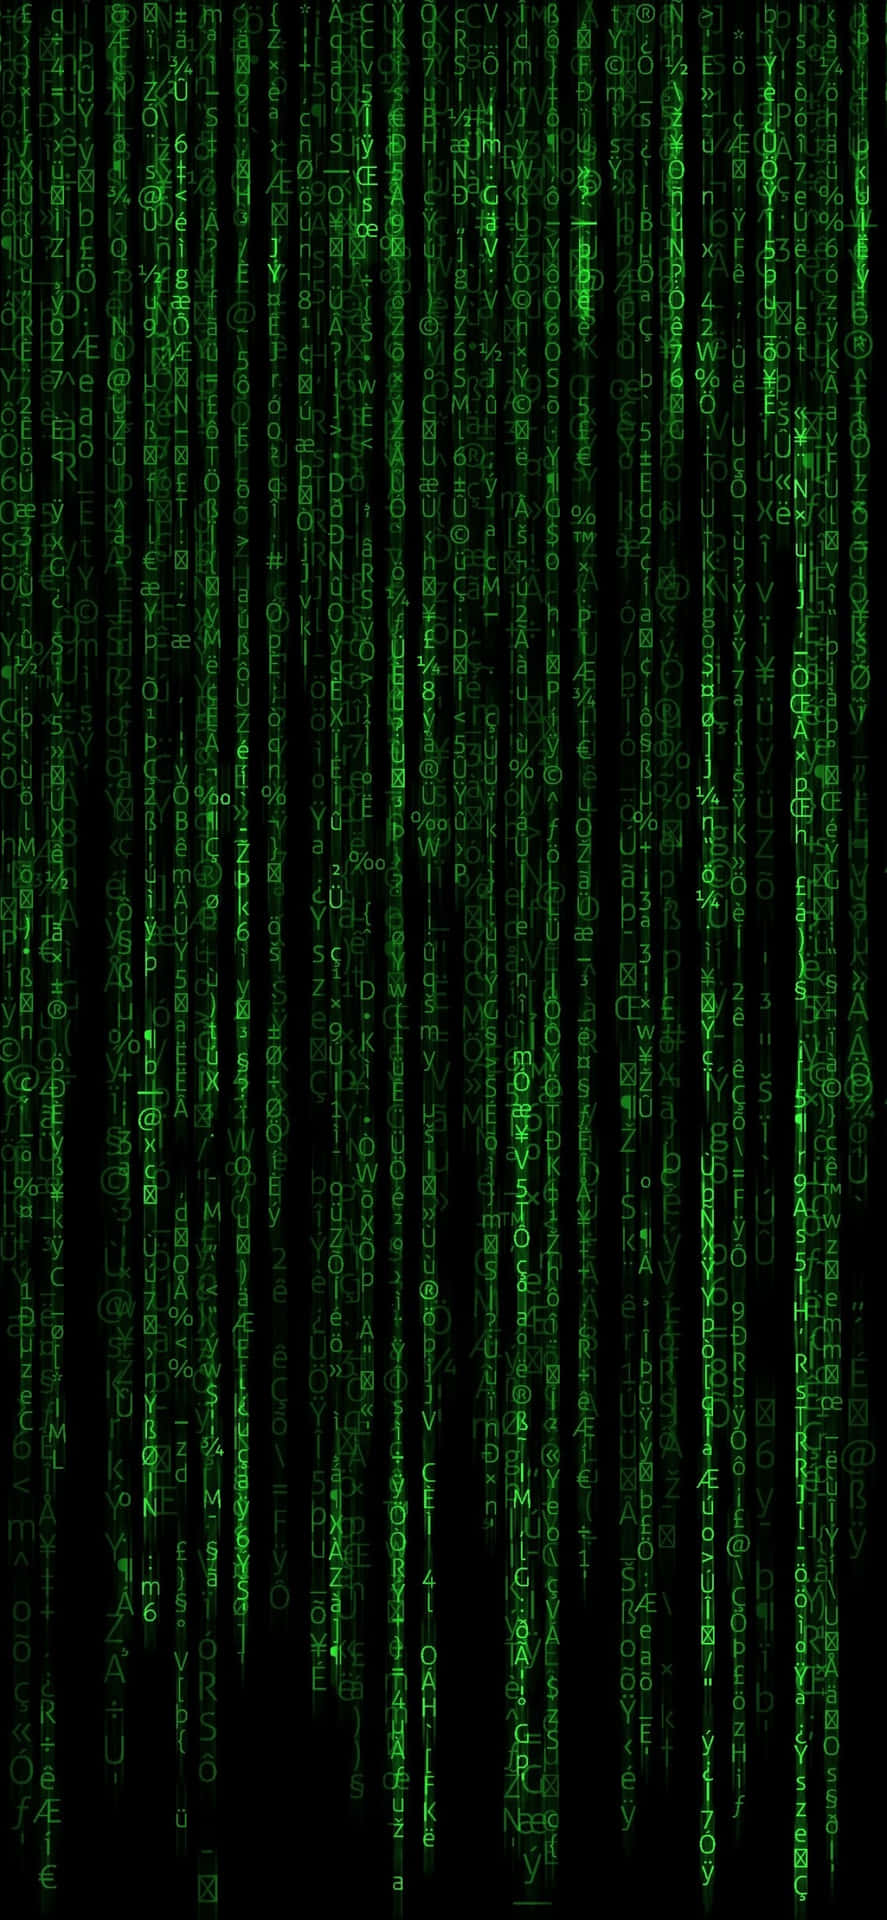 Bildbelysta Matrixkoden. Wallpaper